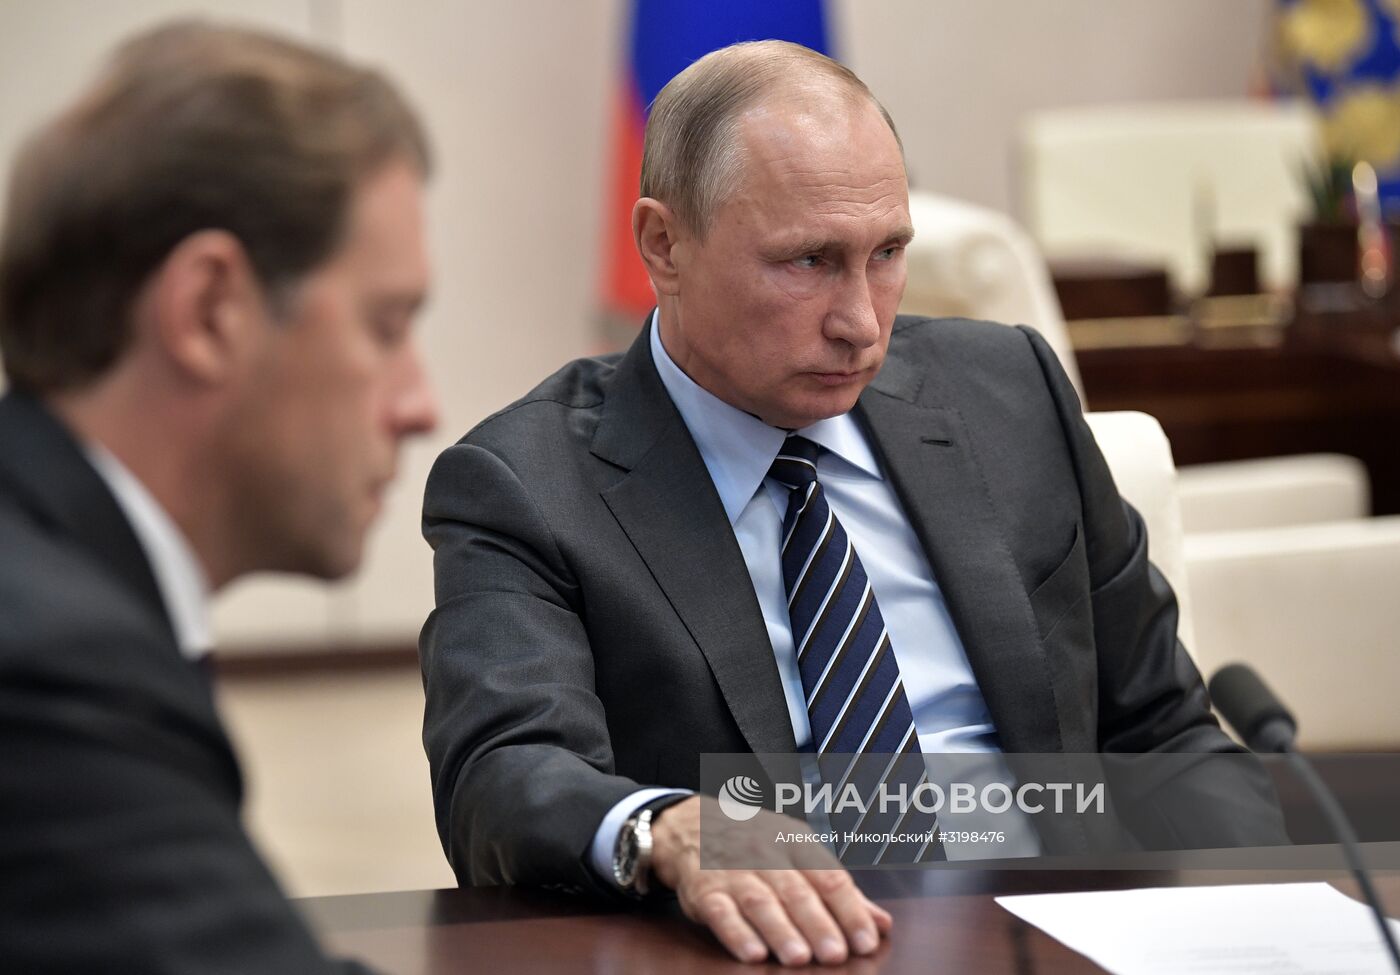 Рабочая встреча президента РФ В. Путина с Д. Мантуровым и М. Орешкиным